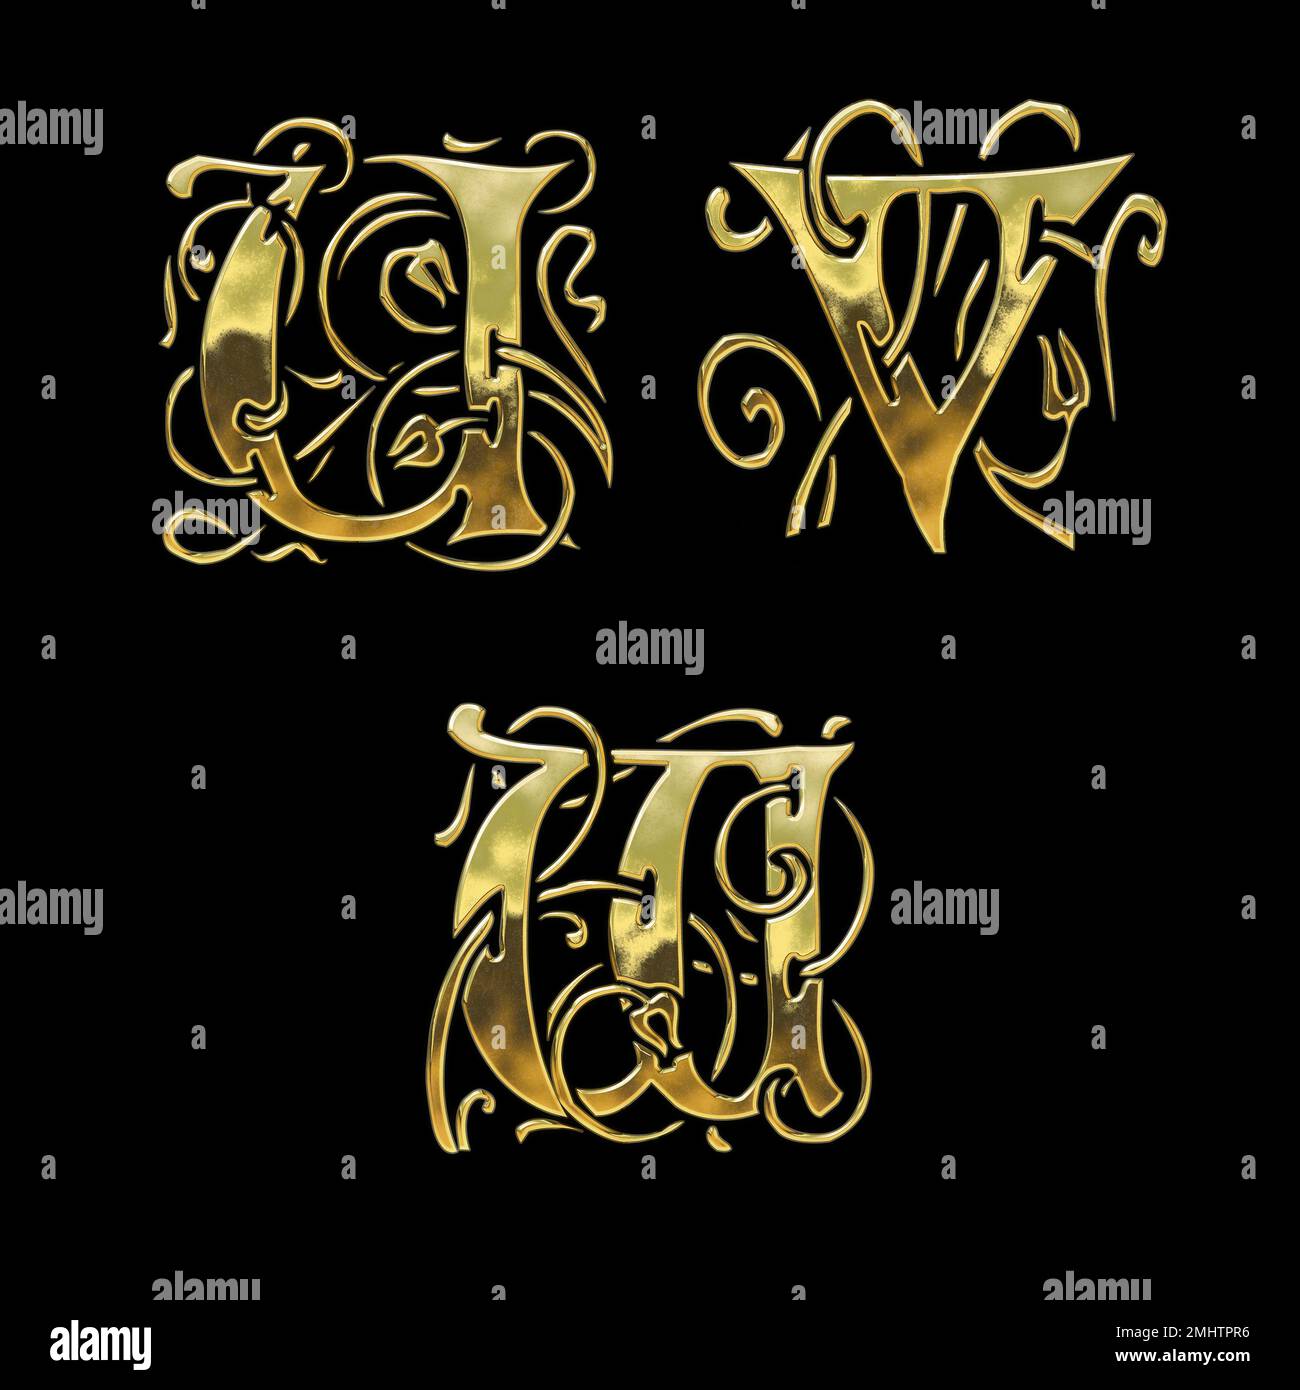 3D rendu de l'alphabet de police de style gothique doré - lettres U-W Banque D'Images